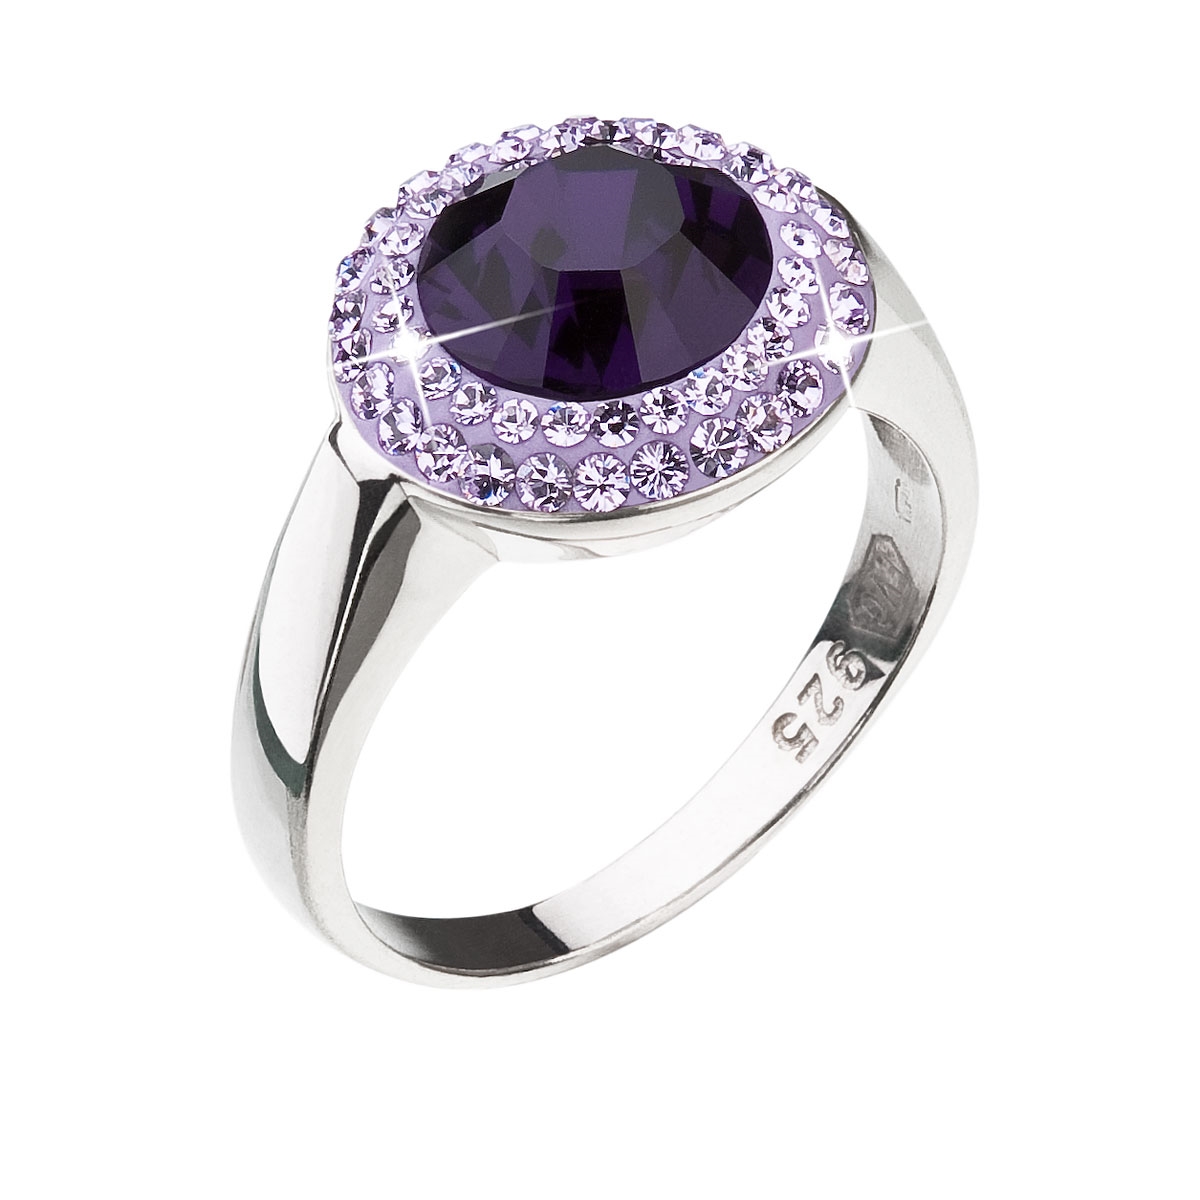 Strieborný prsteň s kryštálmi Swarovski fialový